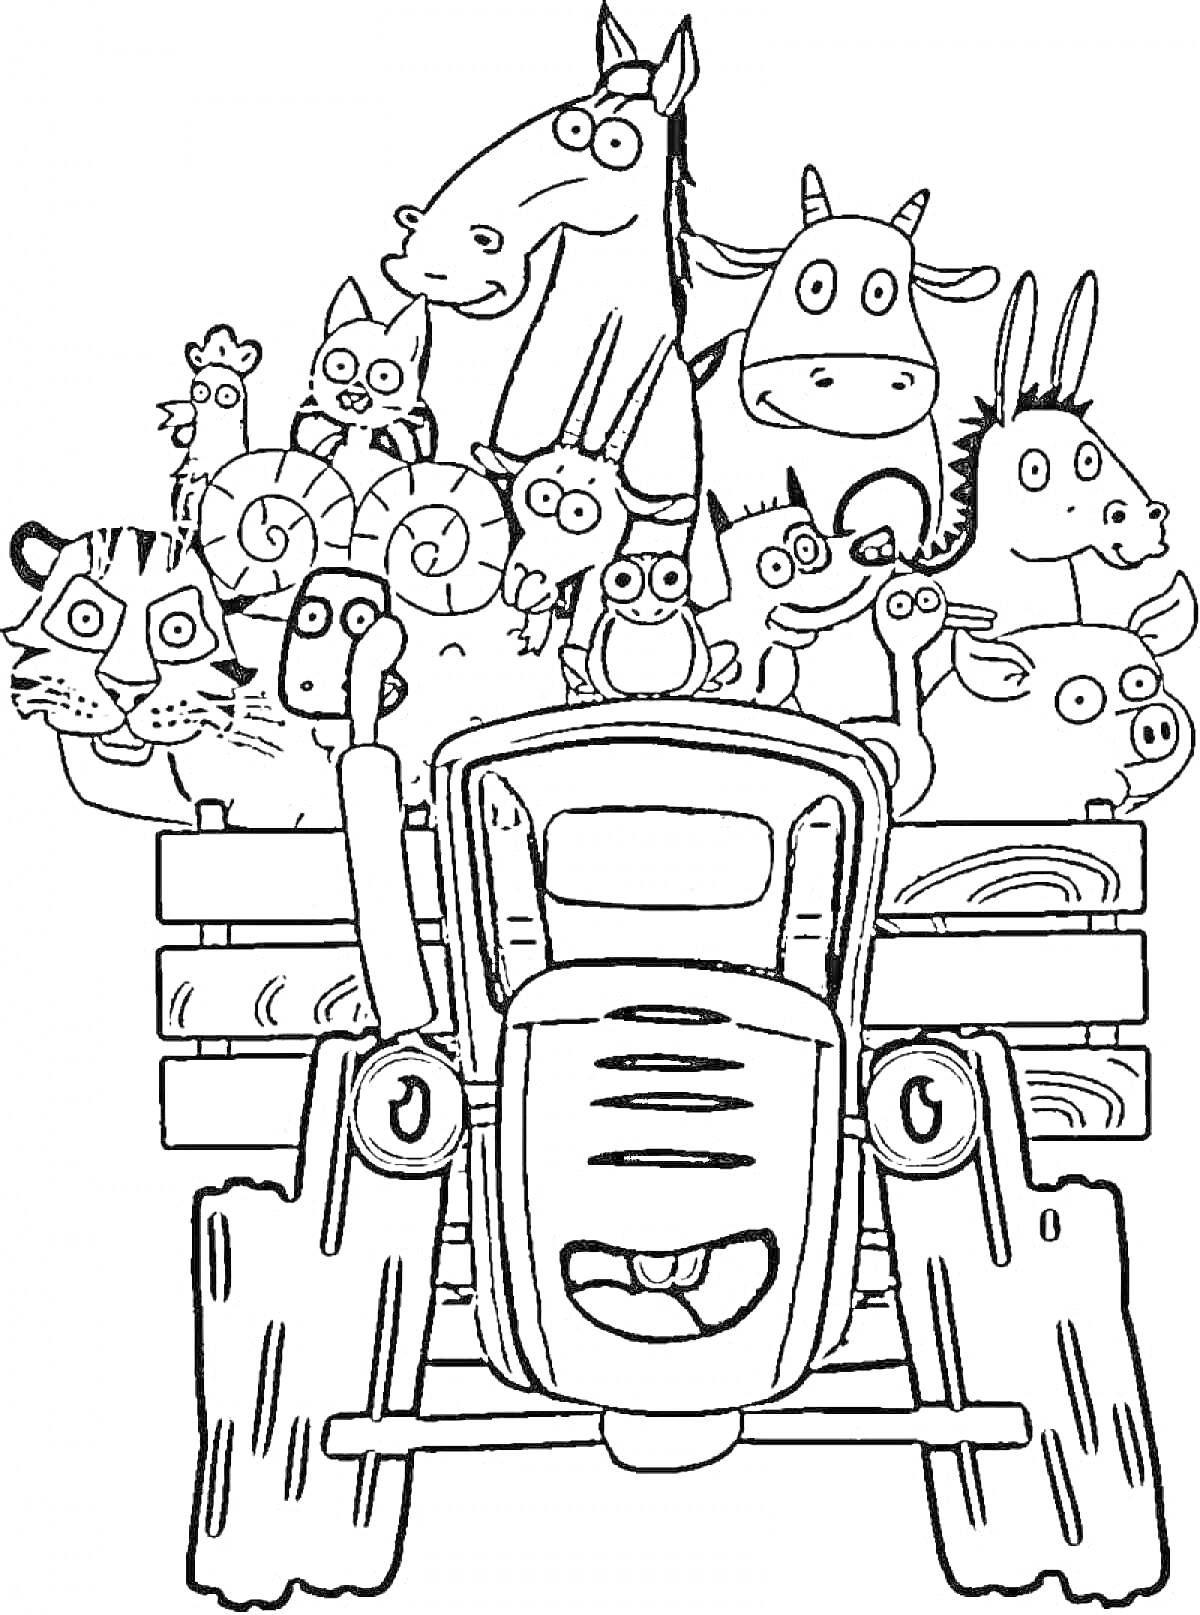 Раскраска Синий трактор с веселыми животными на прицепе (лошадь, корова, осел, тигр, овцы, кролик, свинья и другие)